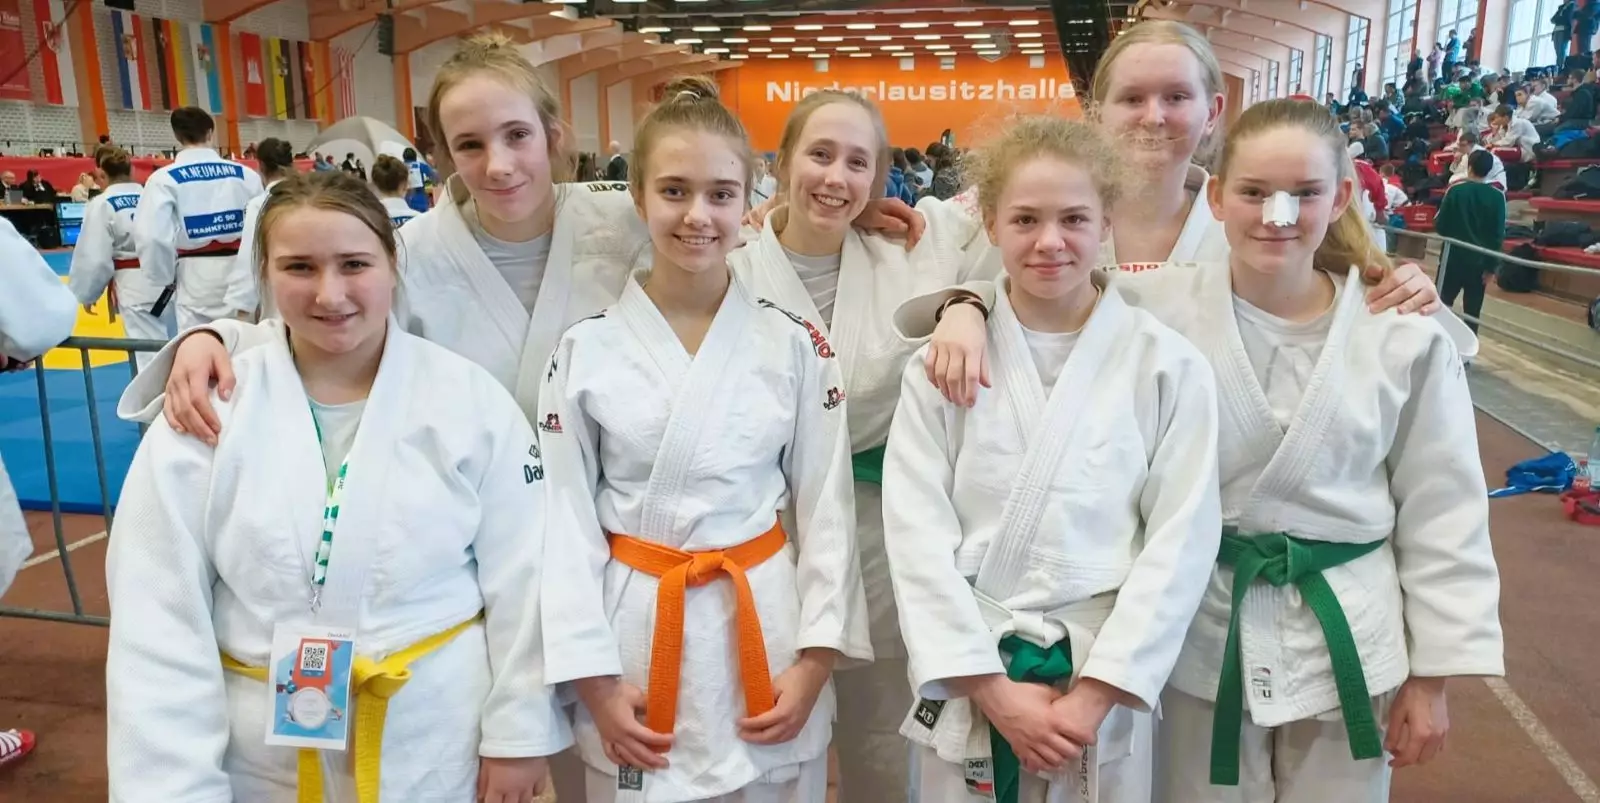 Als jüngstes Team bei den U18-Meisterschaften: Die Judo-Amazonen aus Harburg. Foto: privat